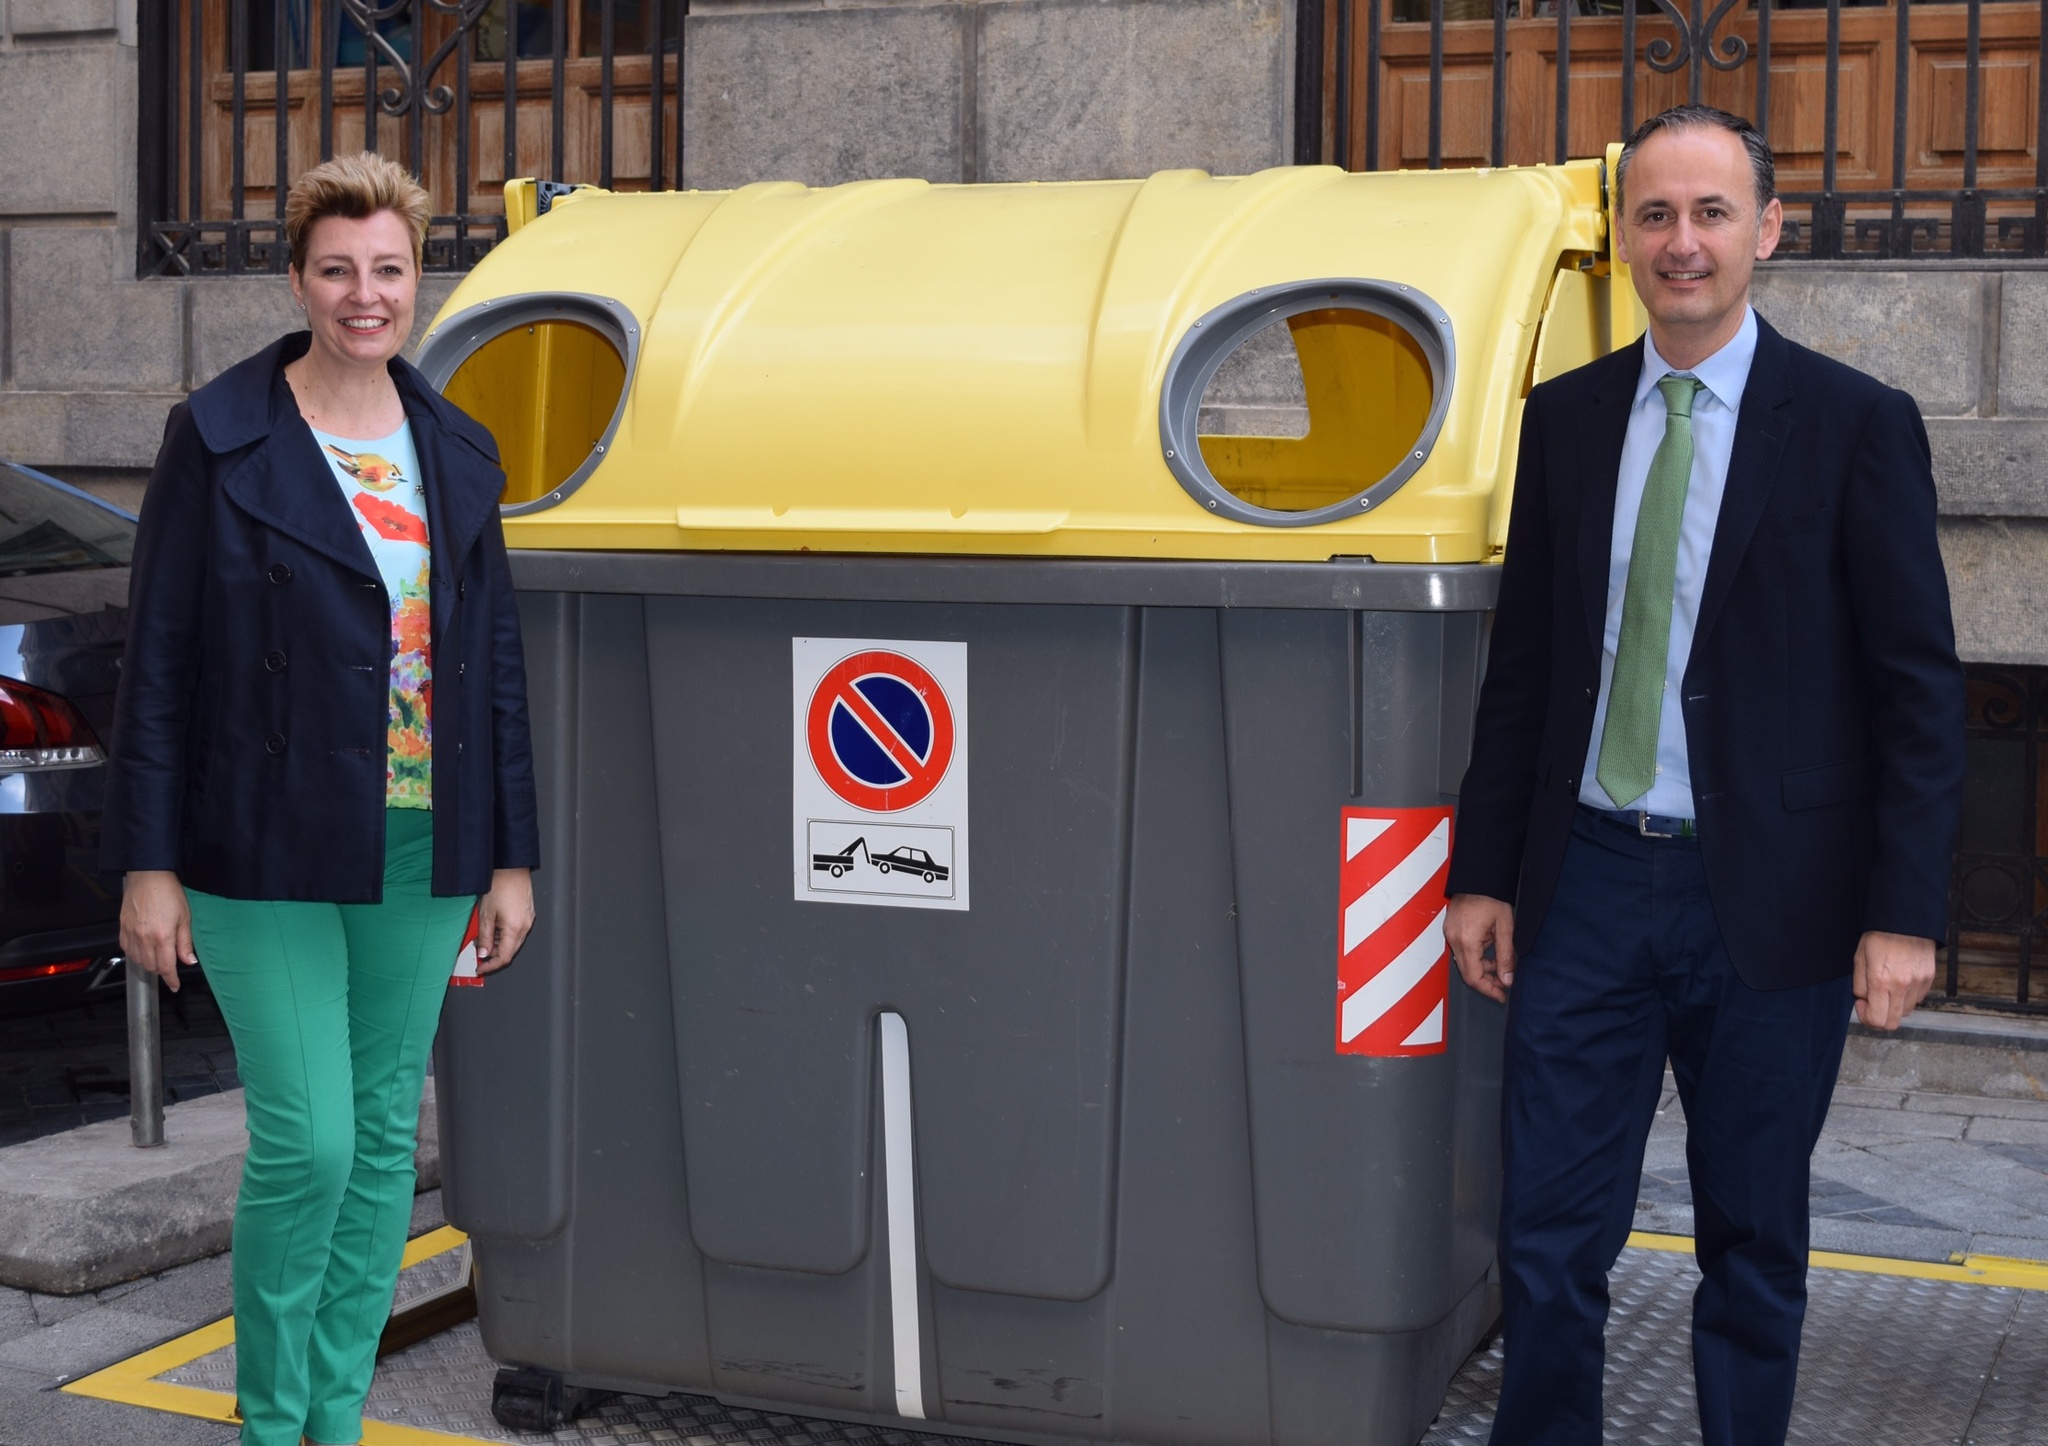 El consejero Javier Celdrán informó de los resultados de reciclaje en la Región